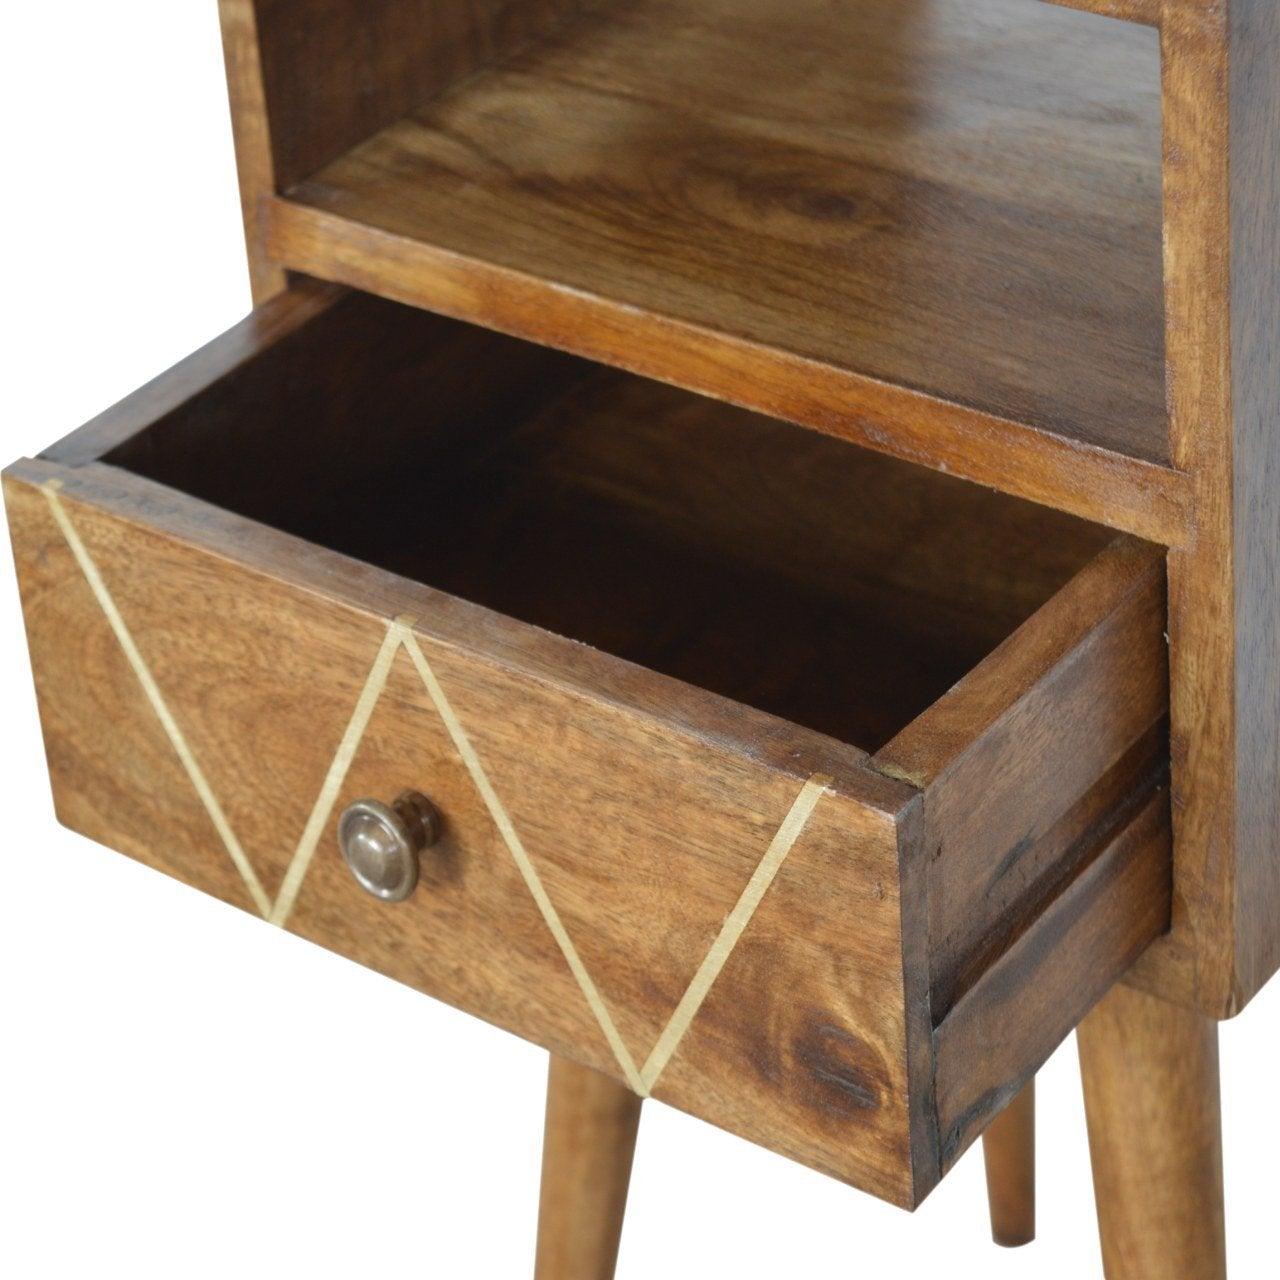 Petite geometric brass inlay bedside table - crimblefest furniture - image 6